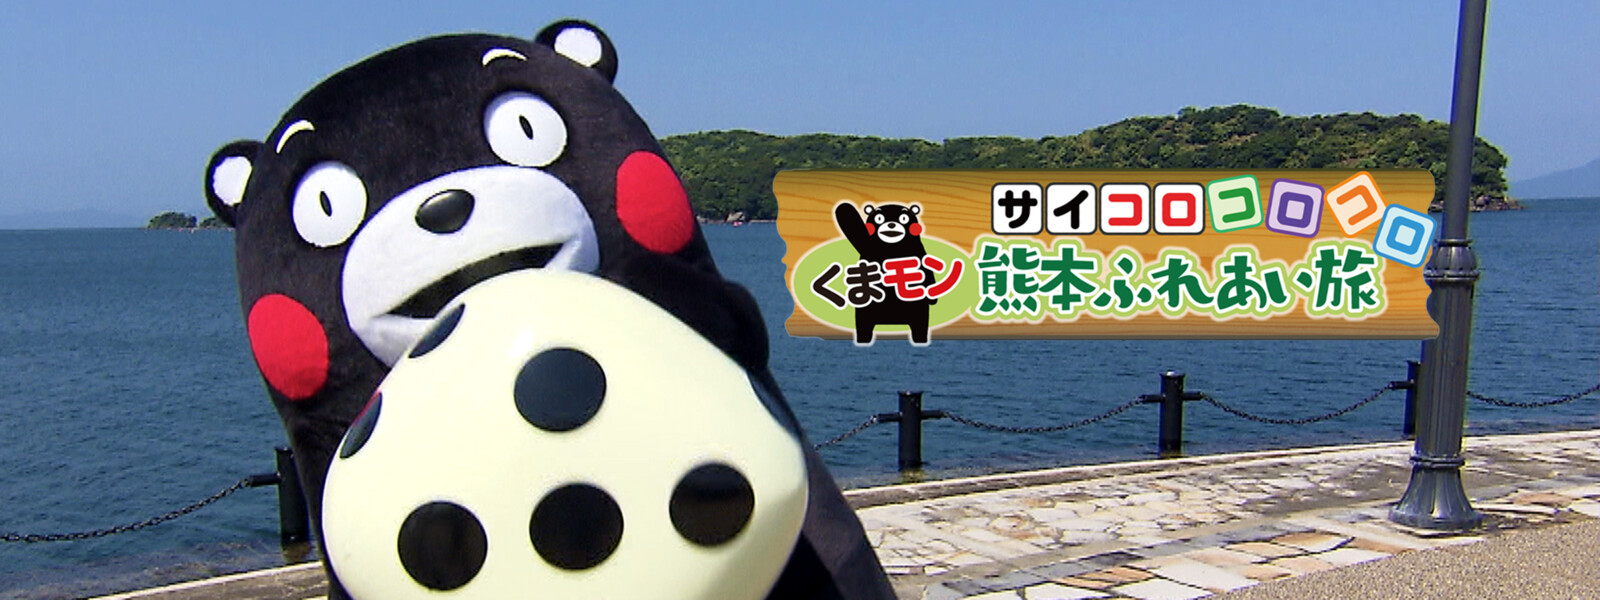 サイコロコロコロくまモン熊本ふれあい旅 シーズン1の動画 - のりモノくまモン